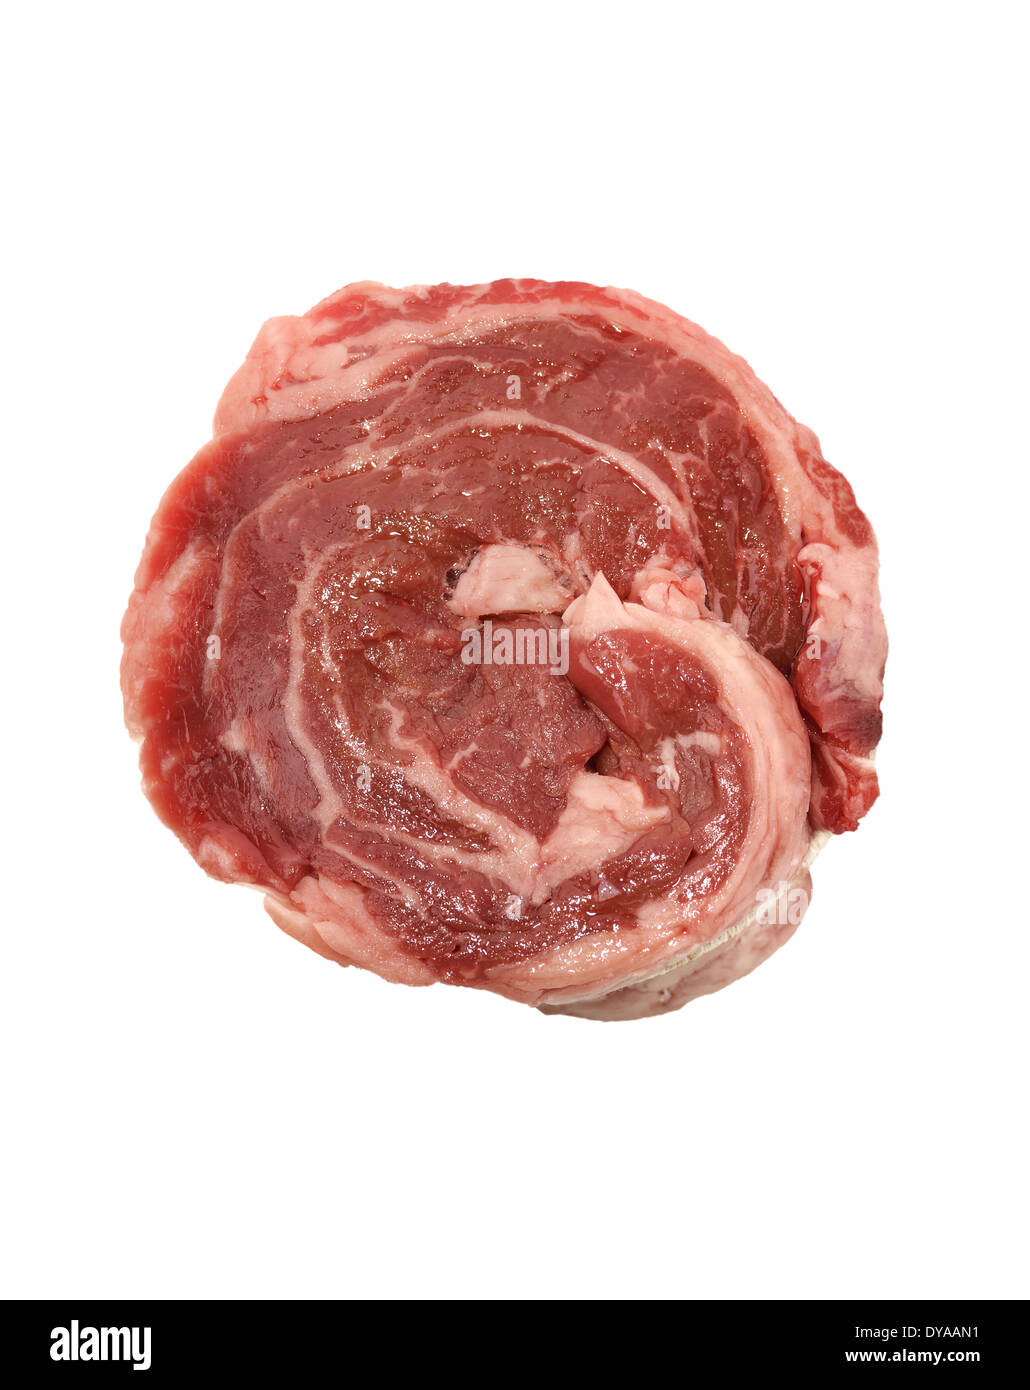 Morceau de viande rouge Steak isolé sur fond blanc Banque D'Images